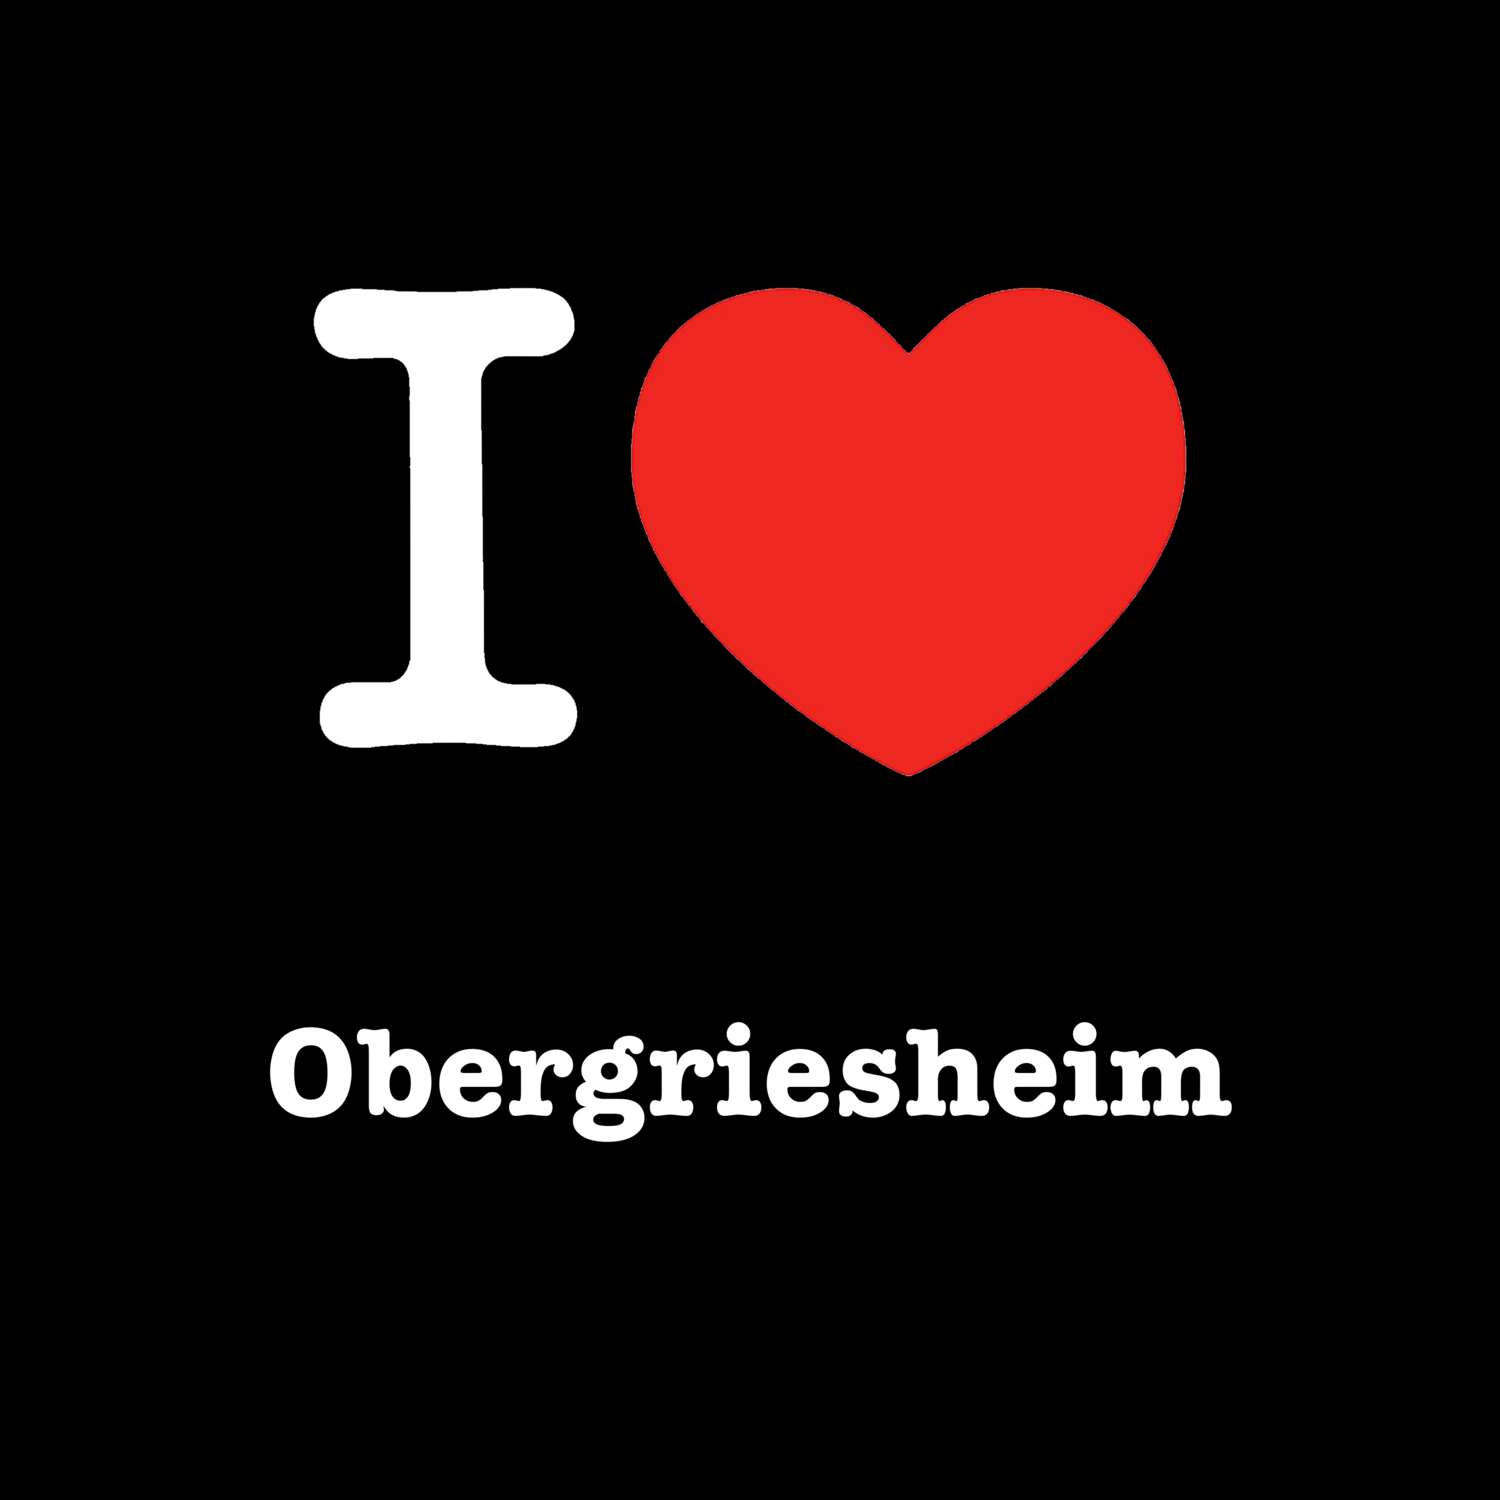 Obergriesheim T-Shirt »I love«